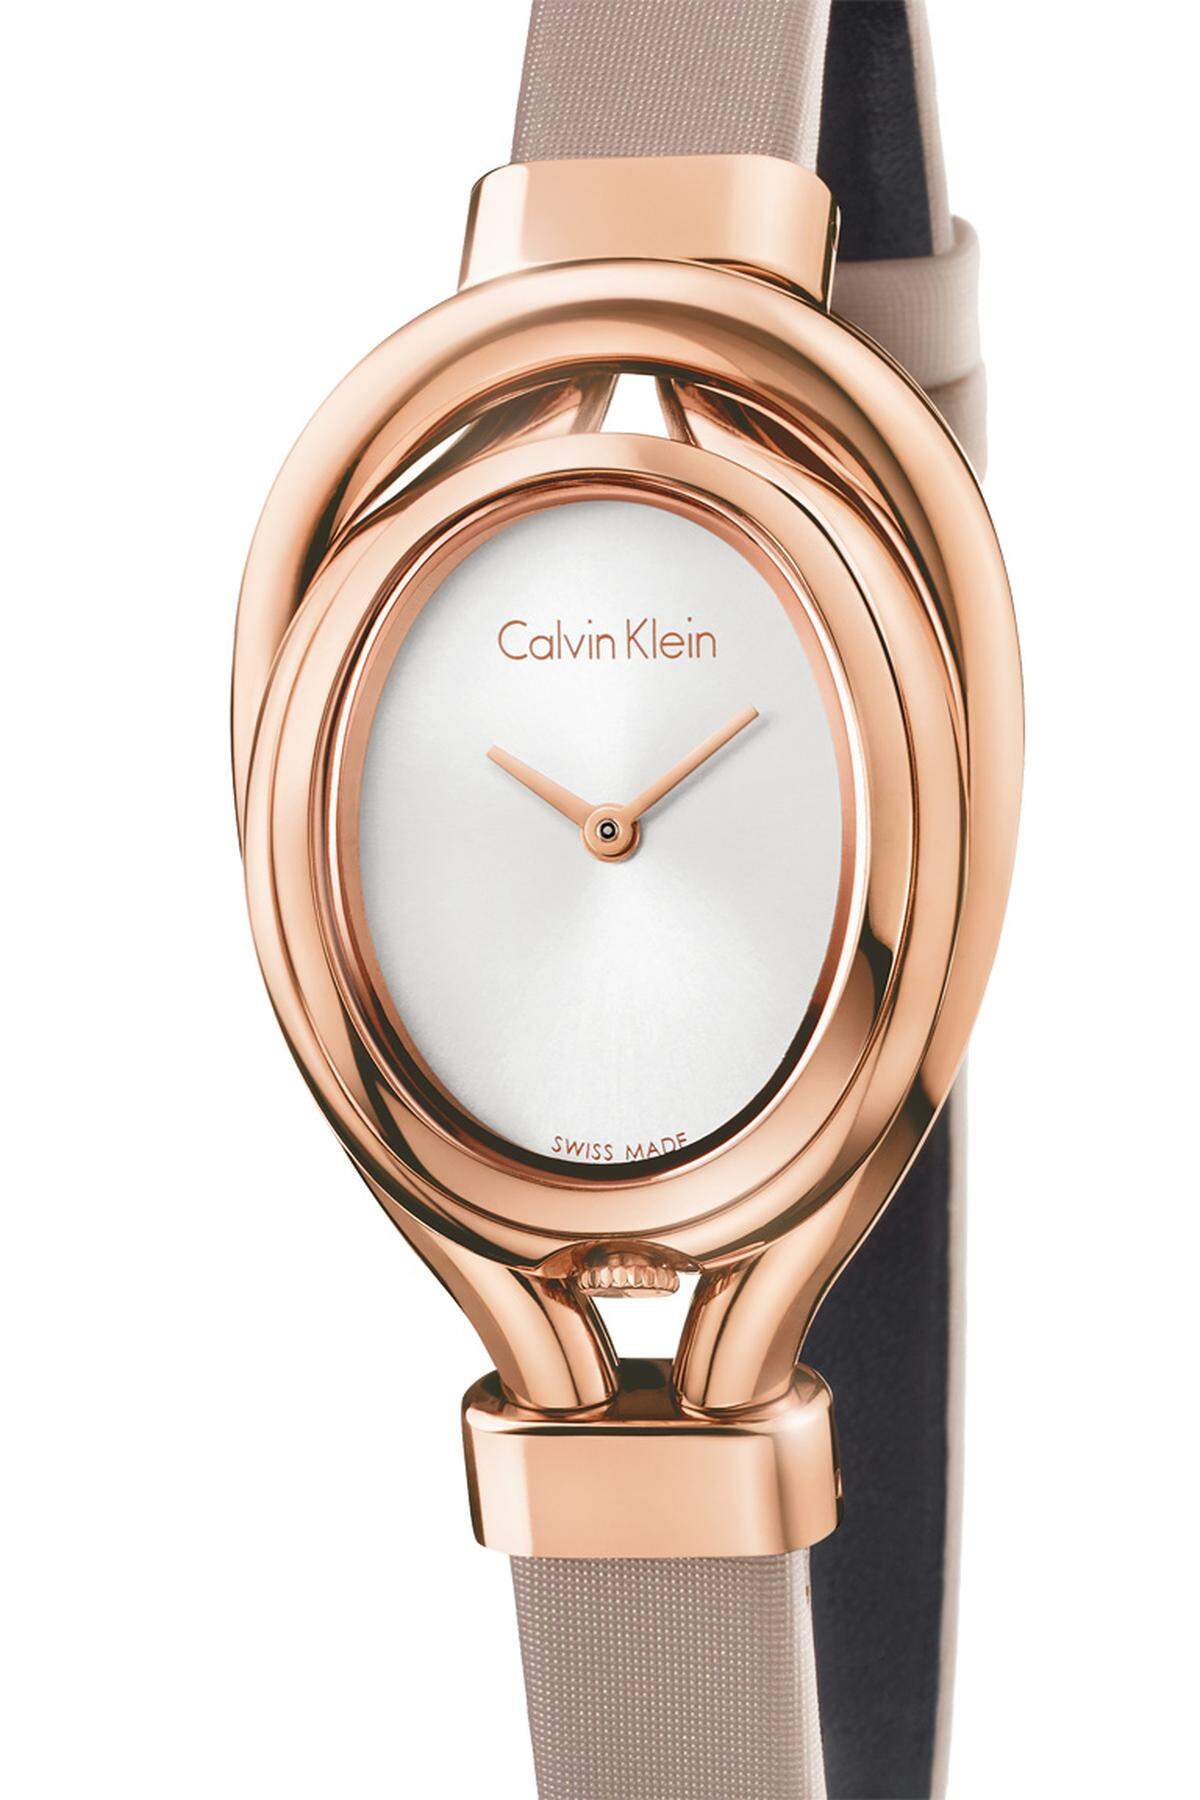 Die „Microbelt“ von Calvin Klein ist von lieblichen Damenarmbanduhren des frühen vergangenen Jahrhunderts inspiriert. Das Gehäuse, das aussieht wie eine kleine Gürtelschnalle, kann in Stahl oder goldfarben oberflächenbeschichtet gewählt werden.